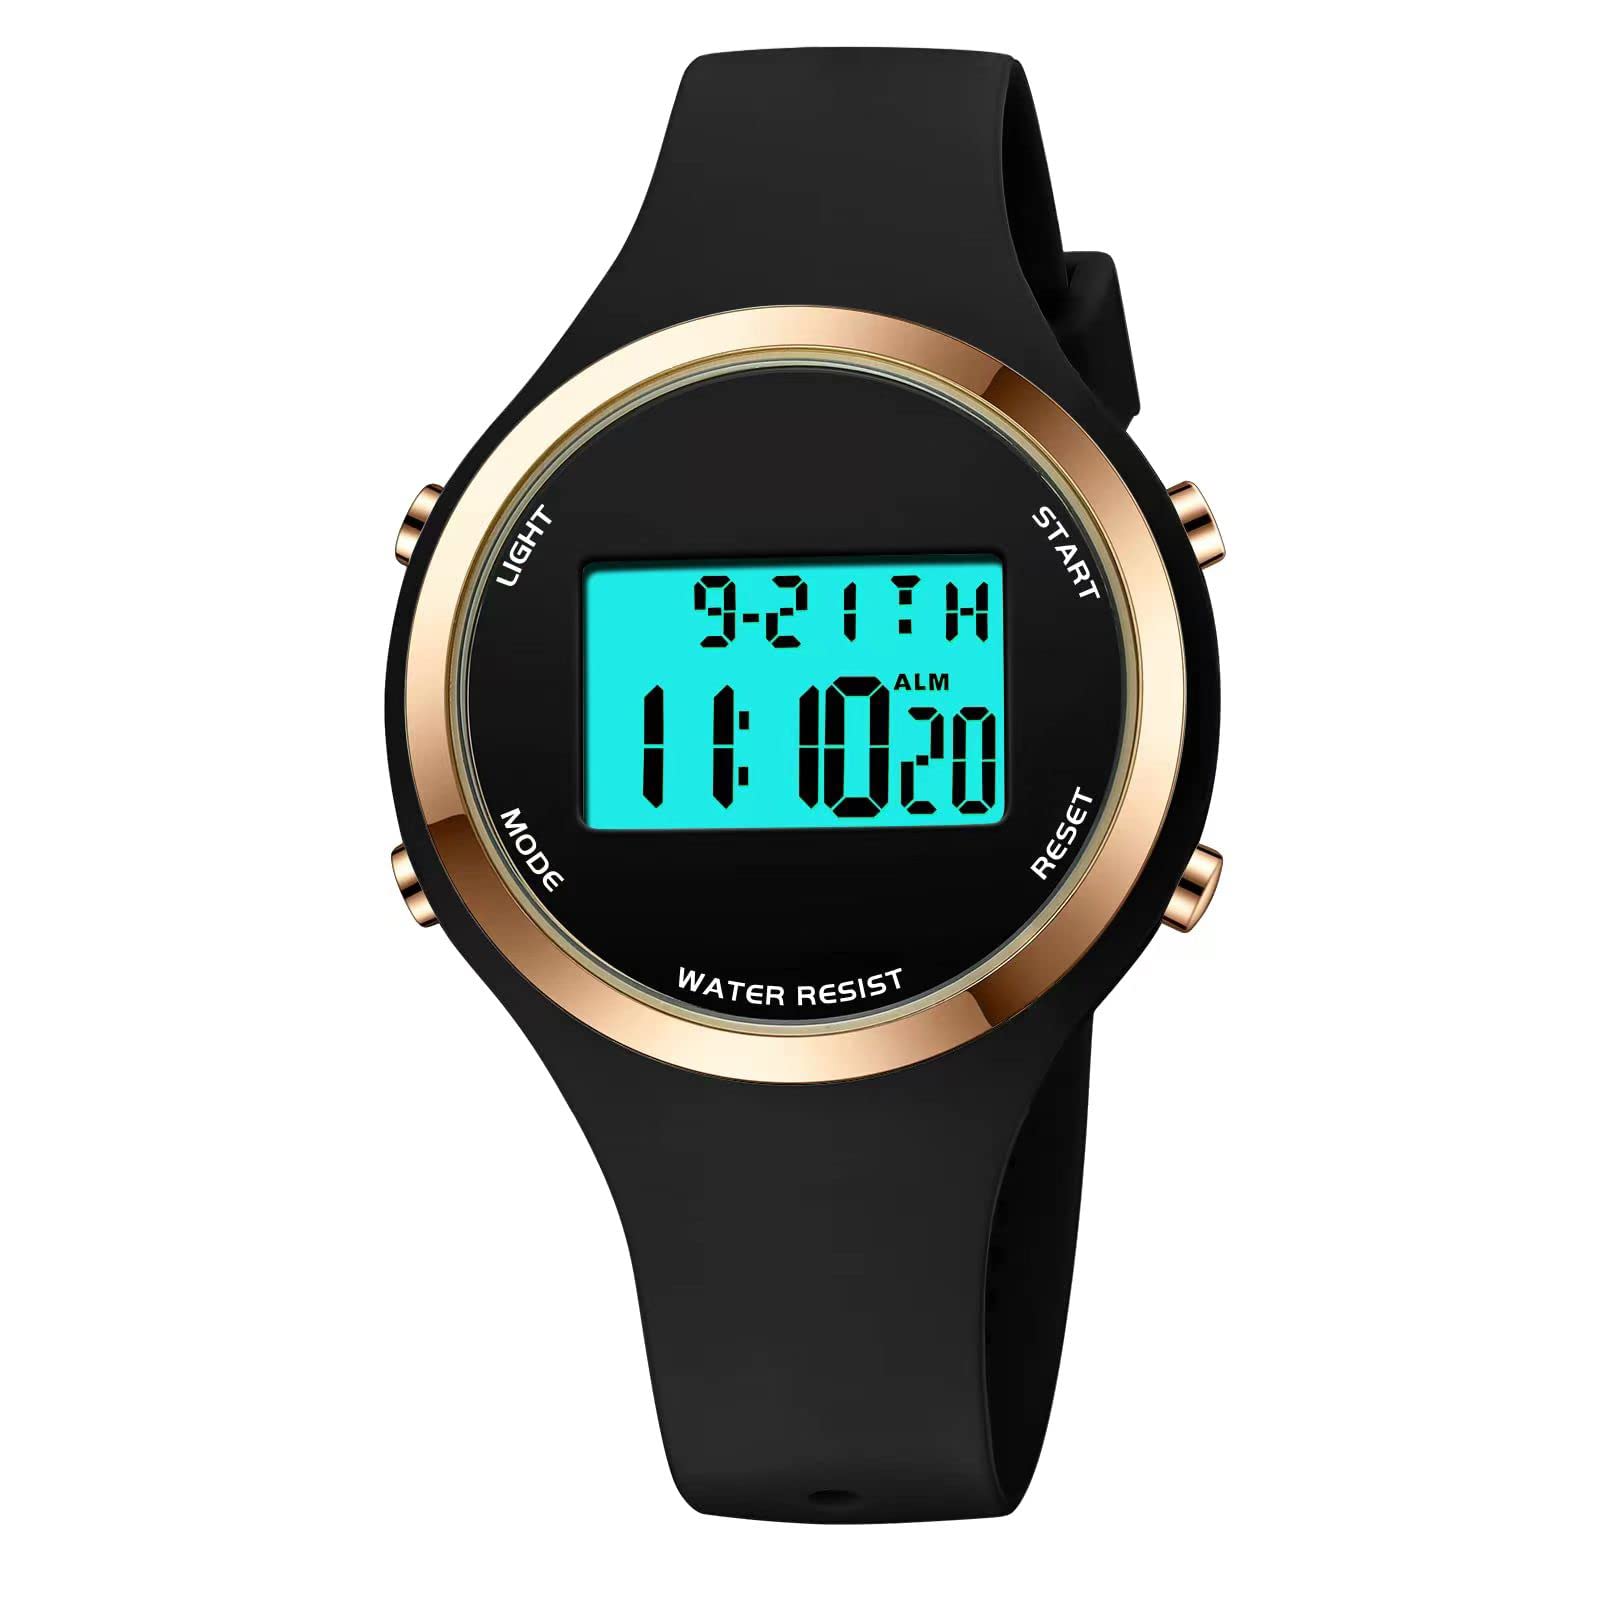 XCZAP Outdoor Sport Watches Alarm Clock 5Bar Waterproof LED Digital Watch